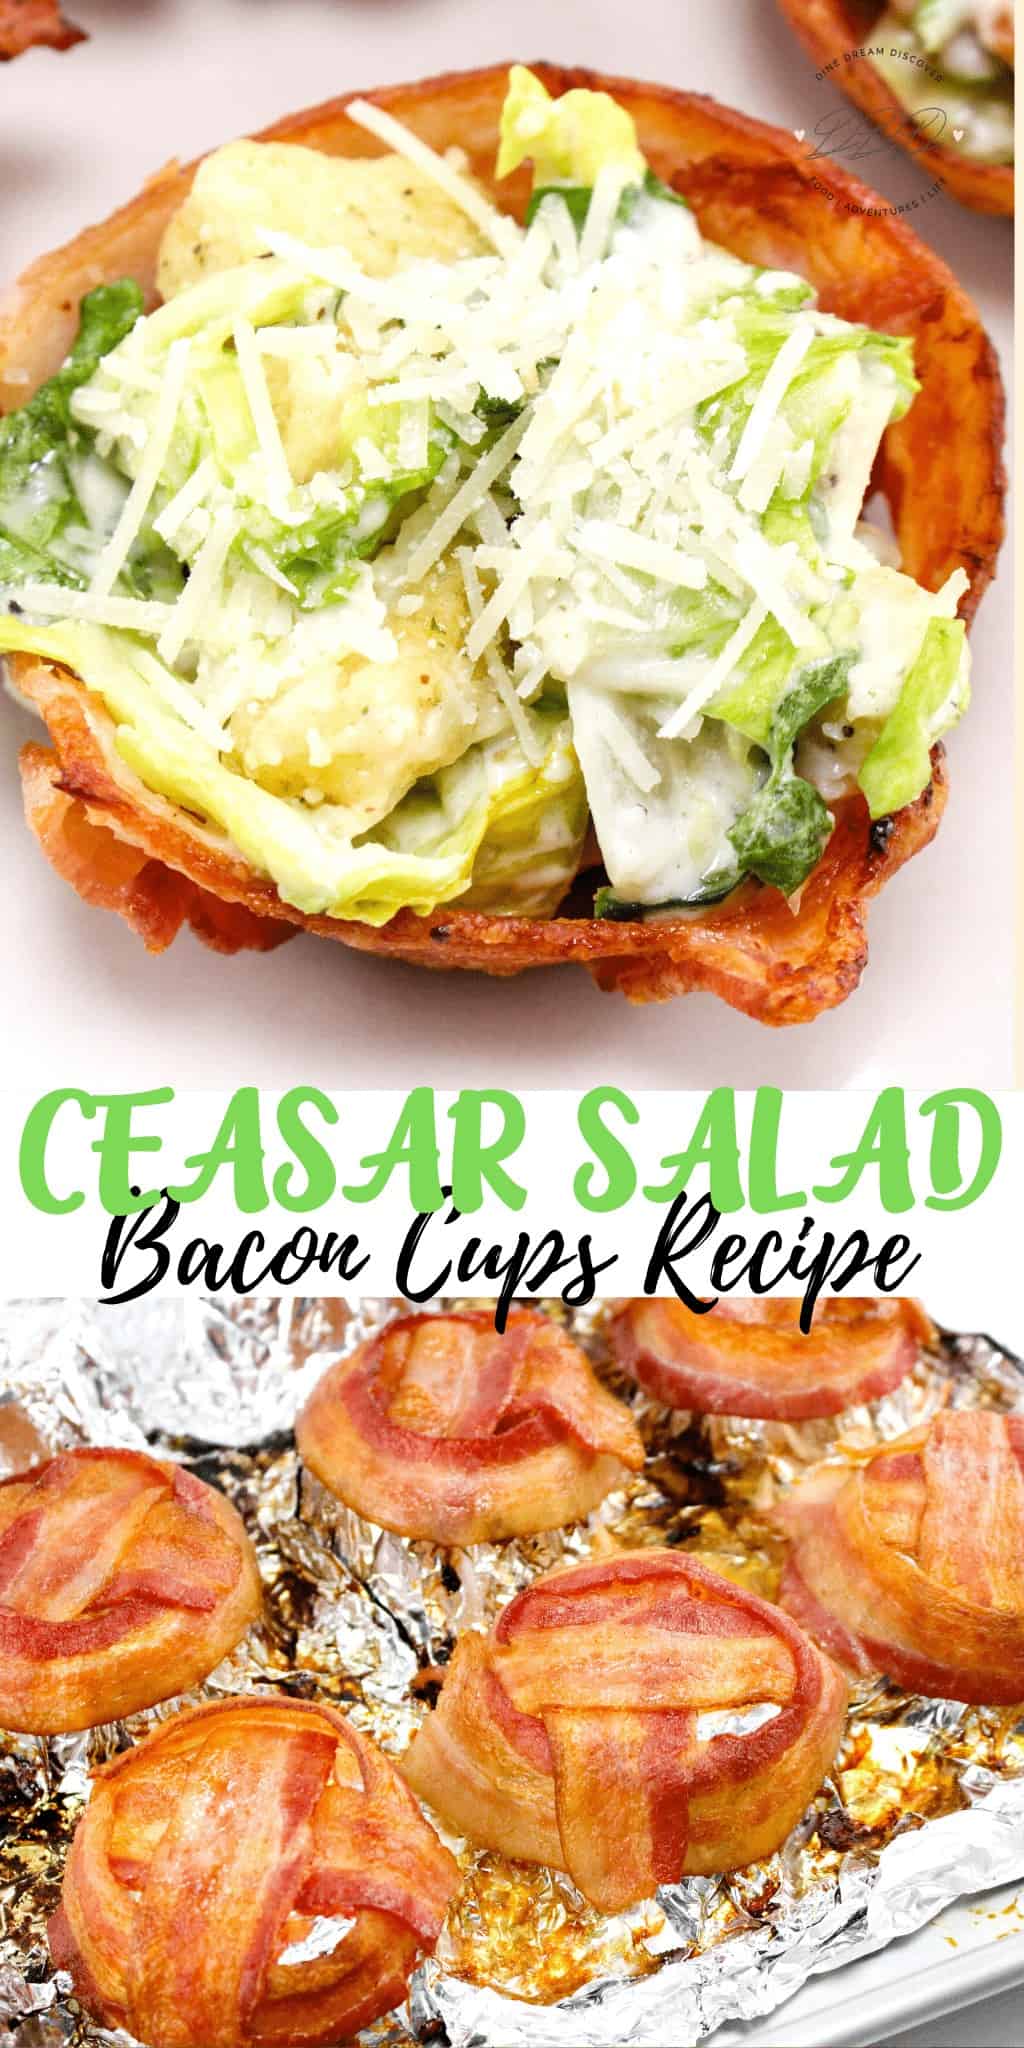 Caesar Salad Bacon Cups Recipe 